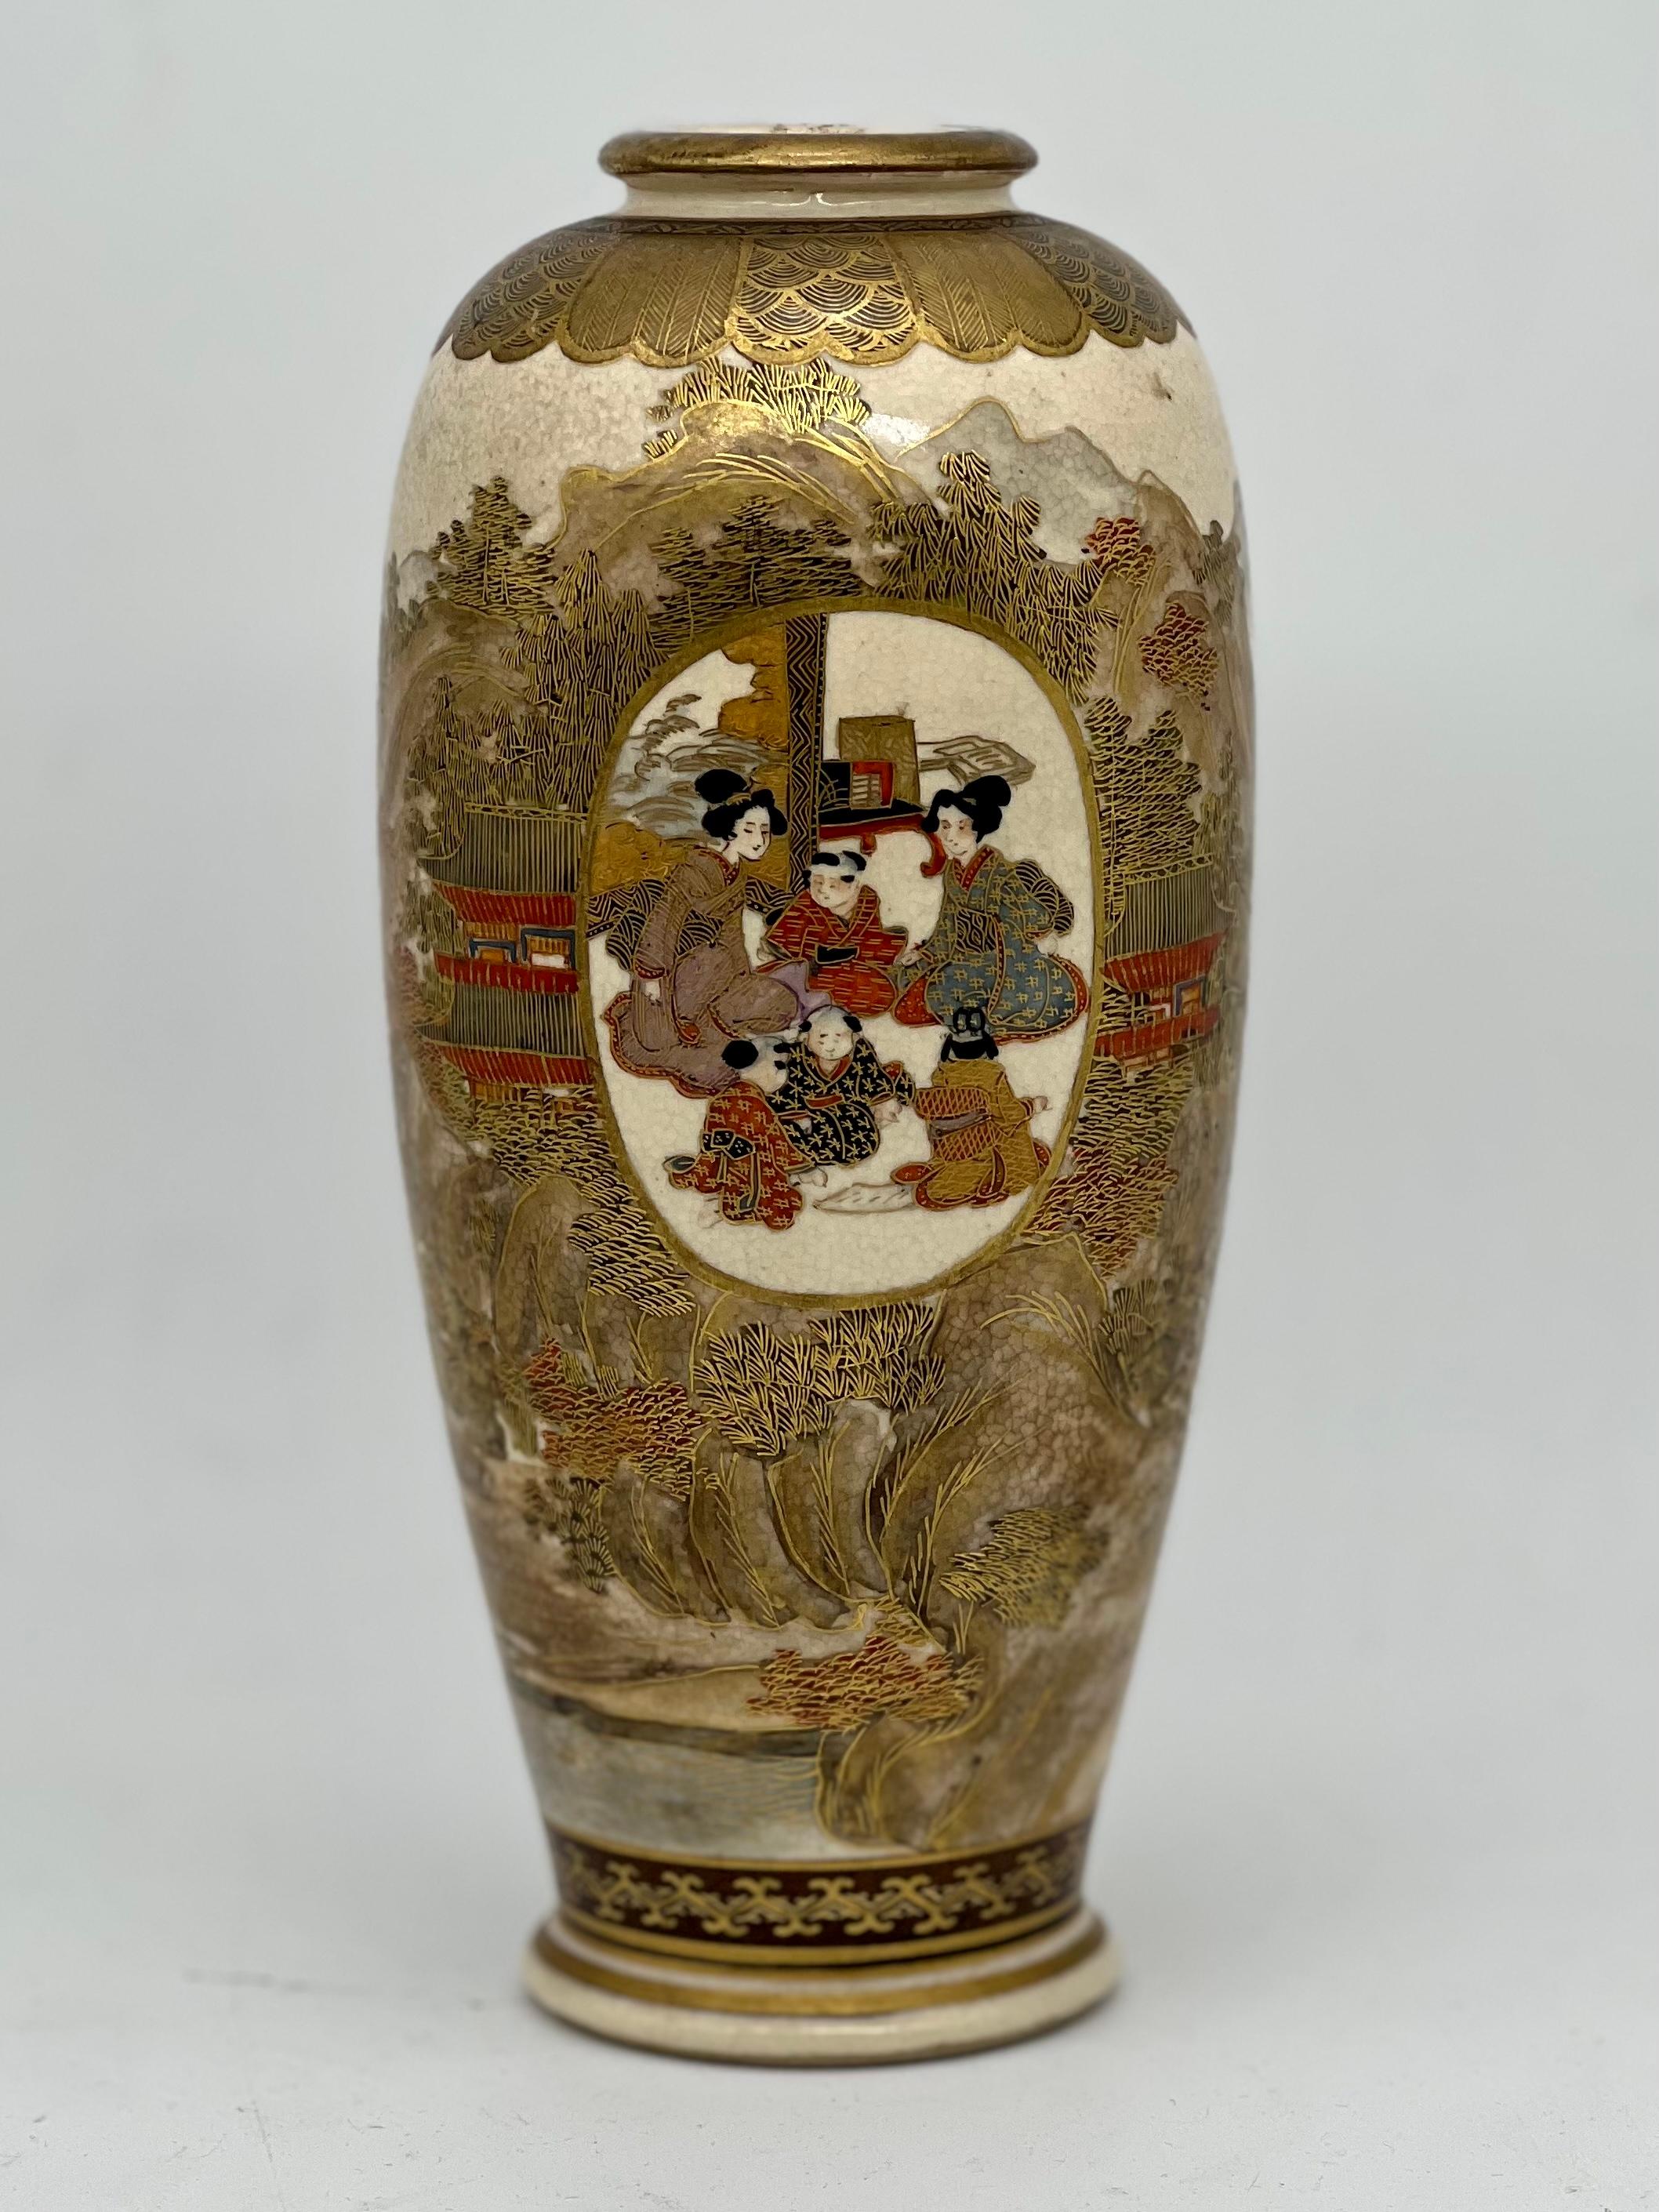 Eine prächtige japanische Satsuma-Vase. Unterschrieben. Meiji-Periode.

19. C.


Eine feine japanische Satsuma-Vase in Balusterform, fein bemalt mit Satsuma-Emaille und mit Goldfarbe verziert, mit einer Tafel in der Mitte, die japanische Frauen und